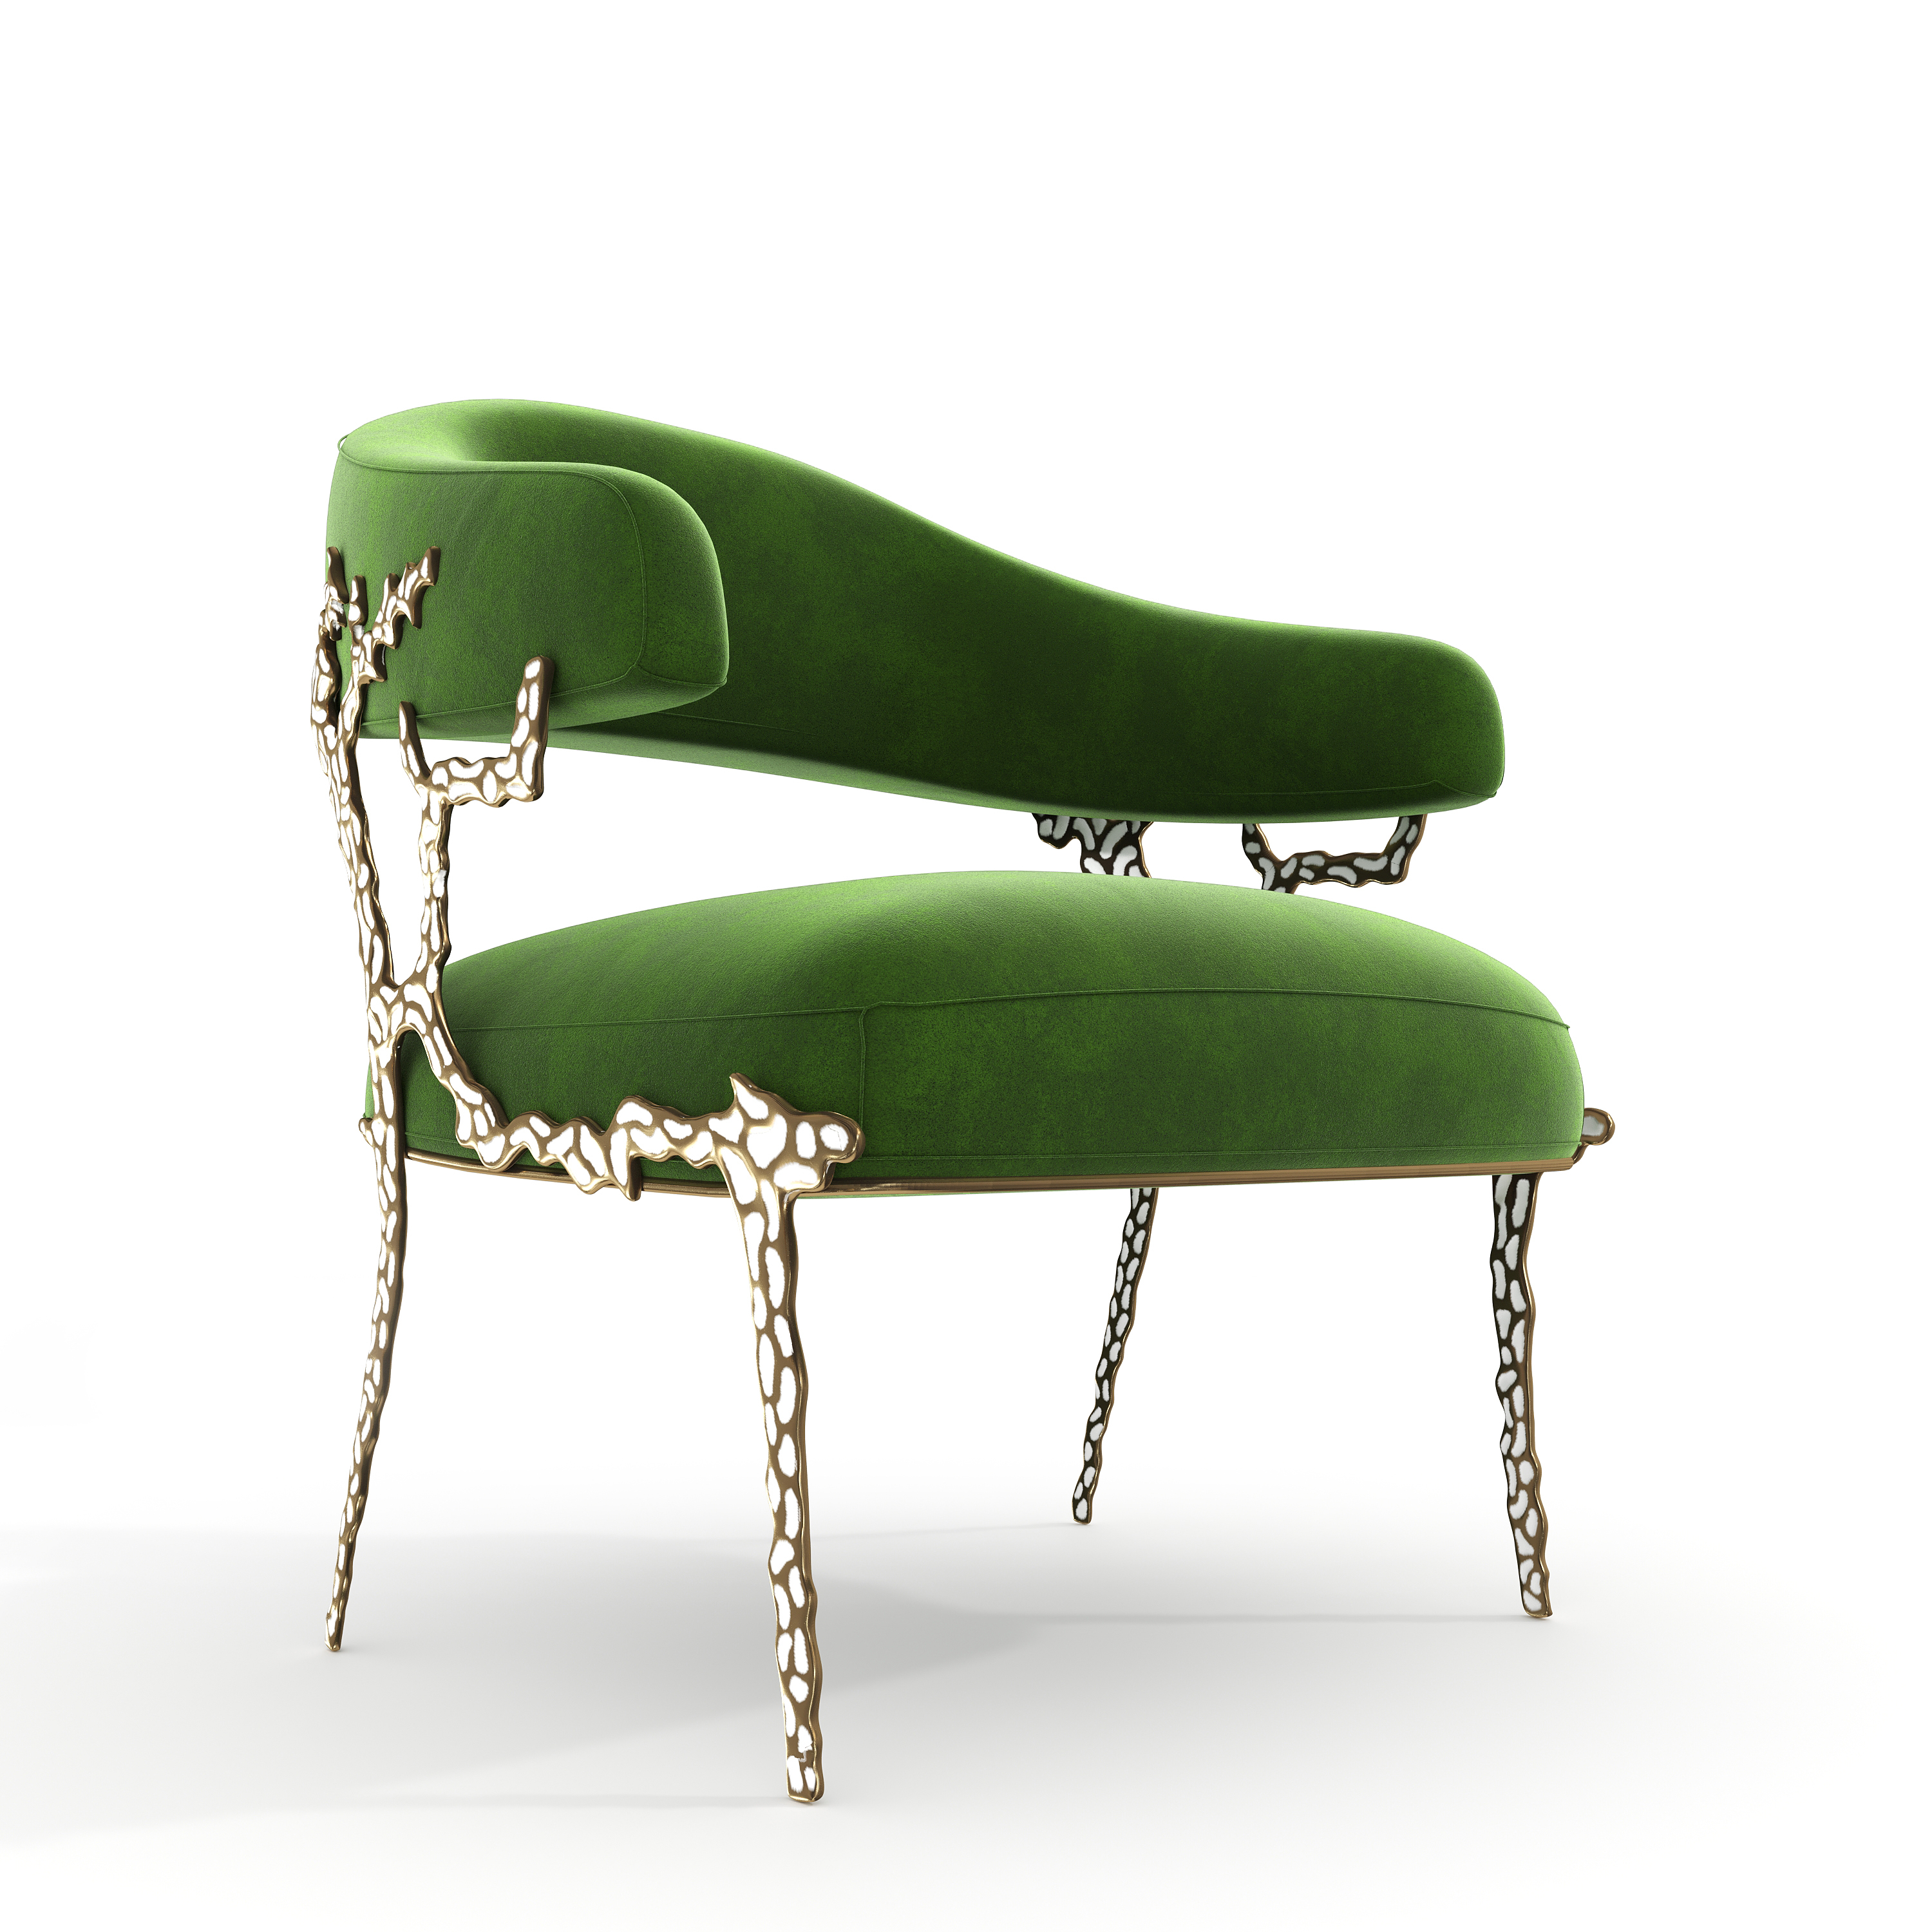 Chair rendering image